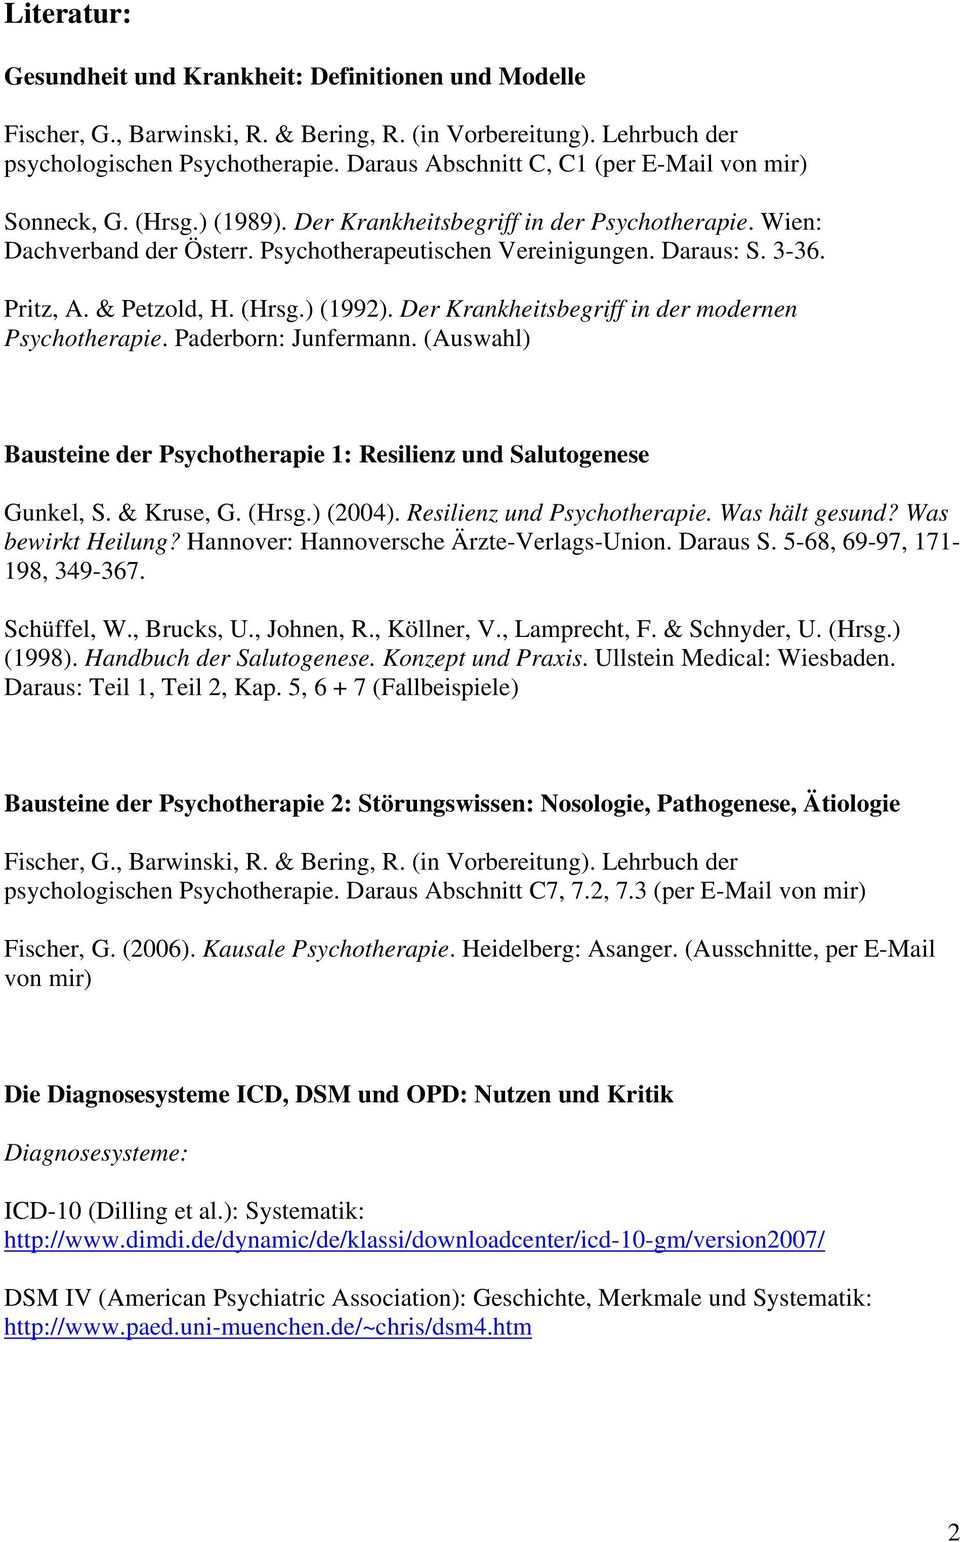 Der Krankheitsbegriff in der modernen Psychotherapie. Paderborn: Junfermann. (Auswahl) Bausteine der Psychotherapie 1: Resilienz und Salutogenese Gunkel, S. & Kruse, G. (Hrsg.) (2004).